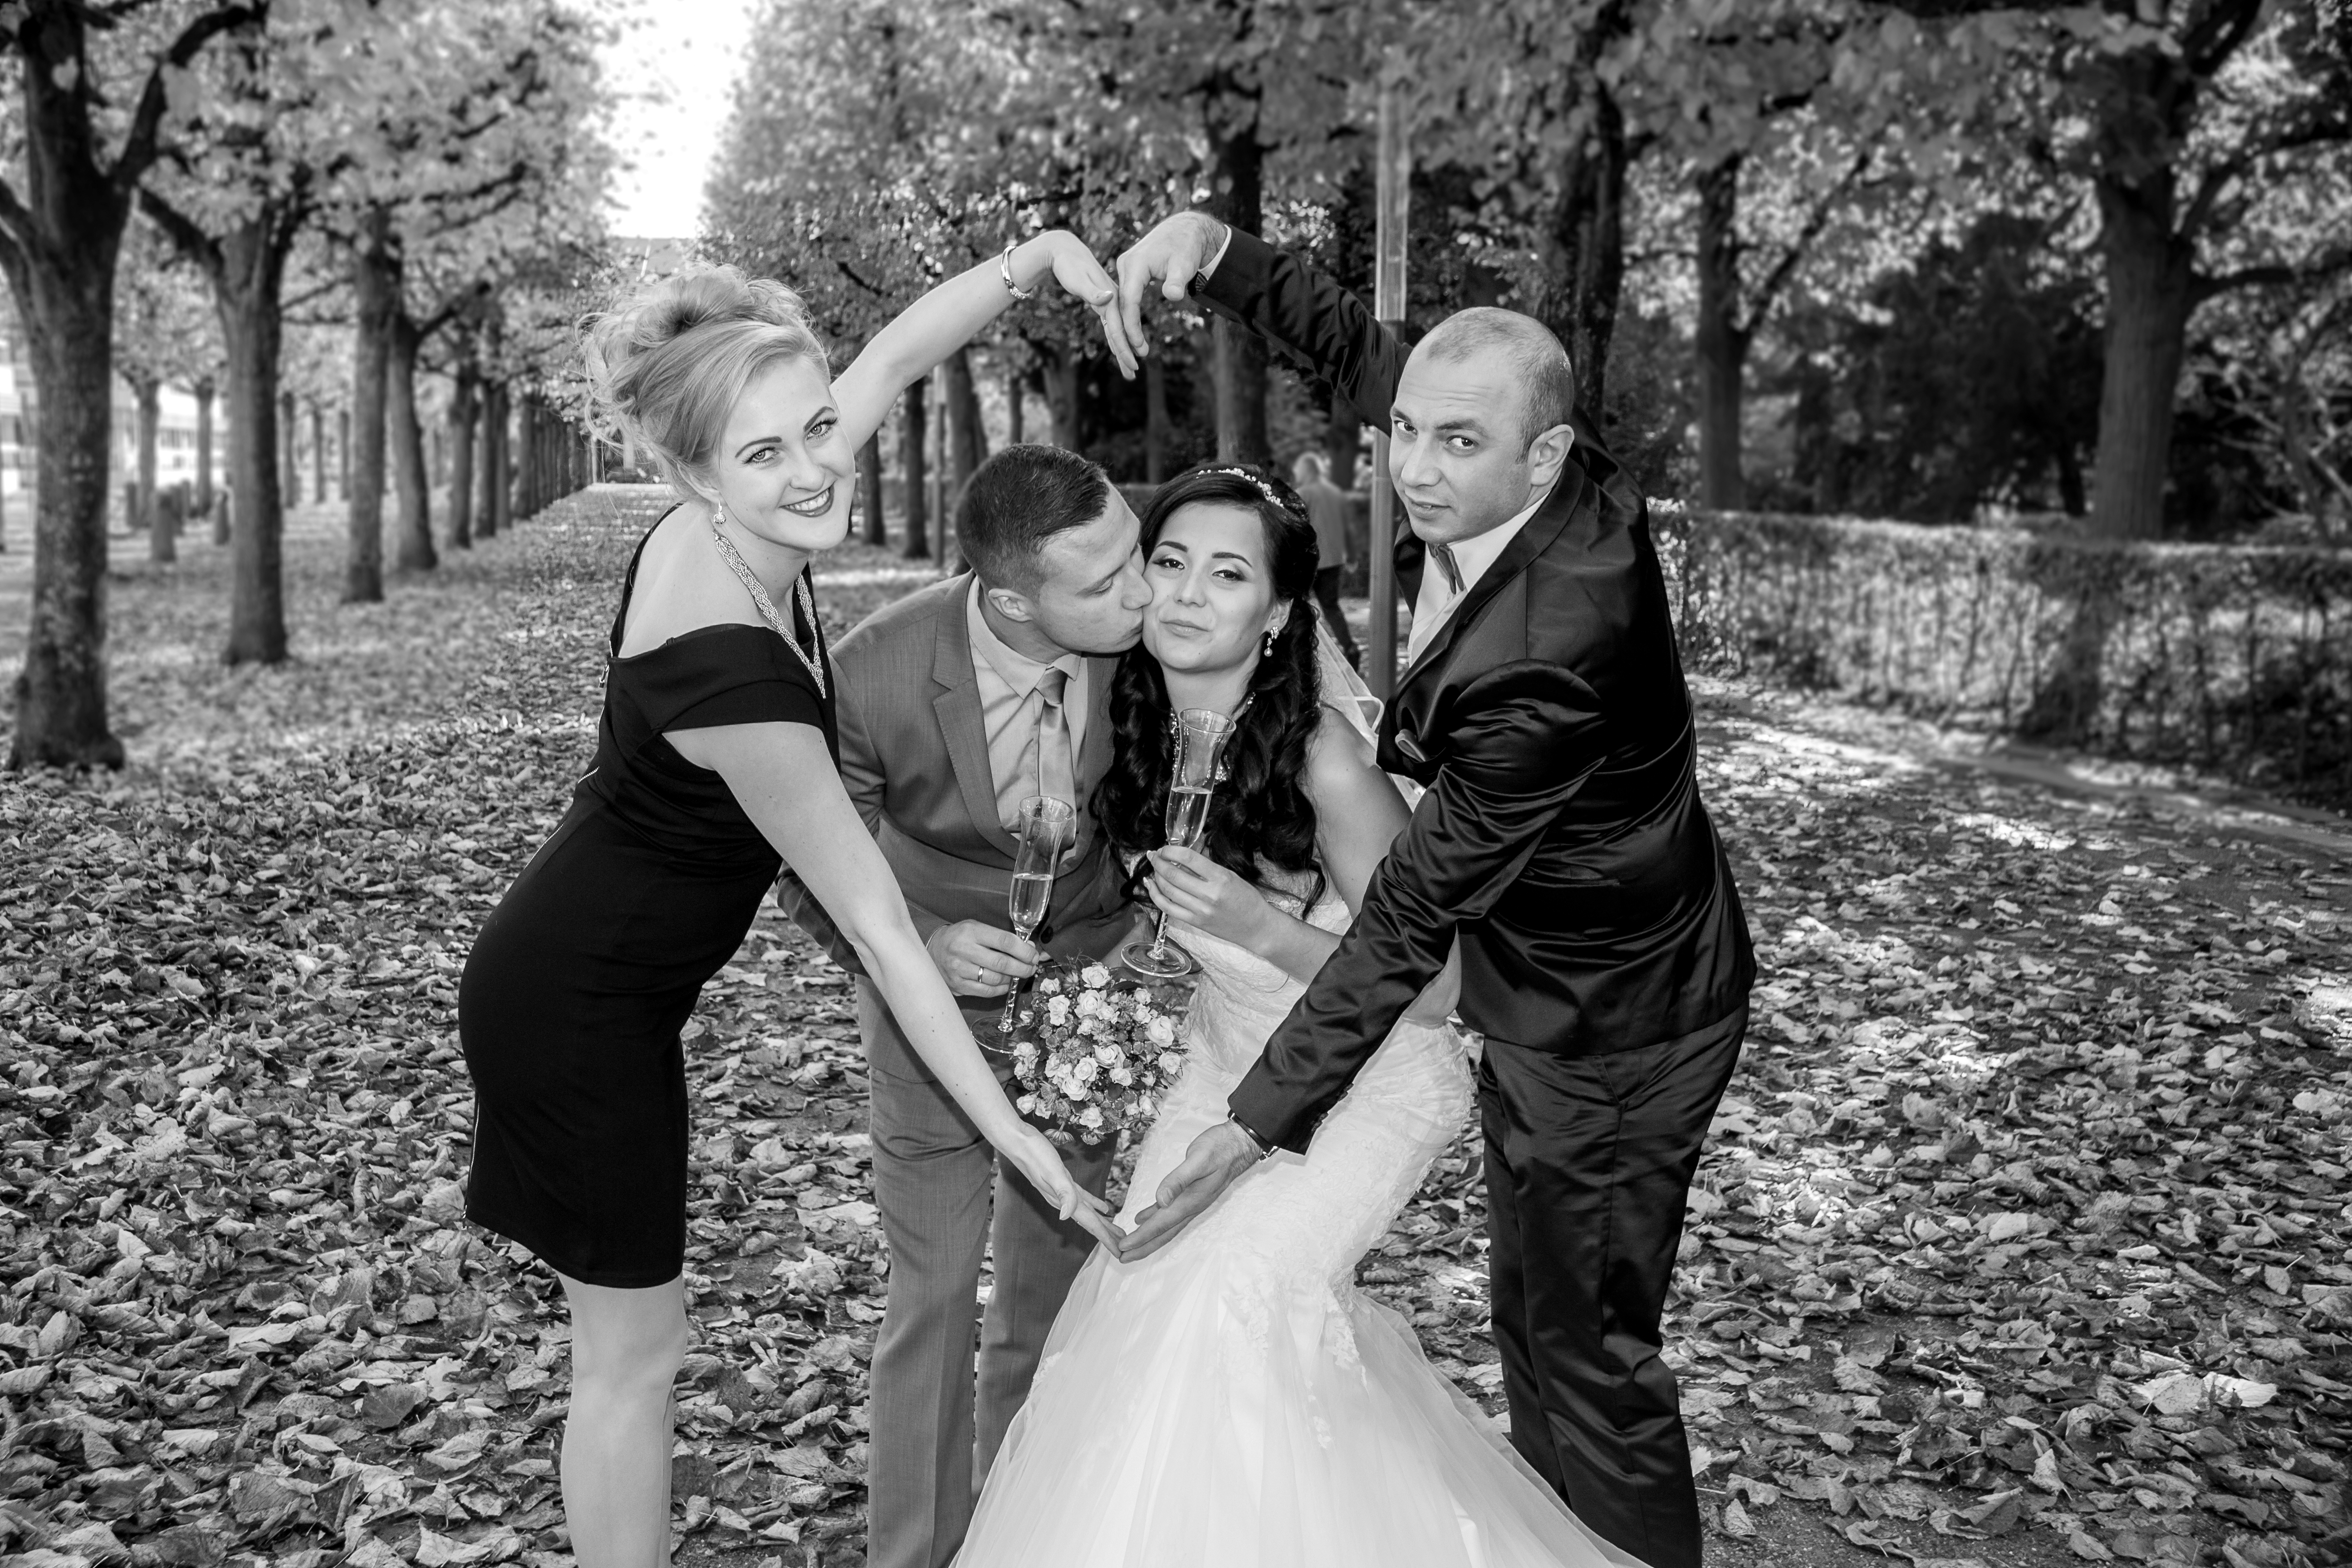 Hochzeitsfotograf Pforzheim erstellt Hochzeitsreportagen, bietet Paarshootings &amp;amp; Videos im modernen, kreativen und echten Stil an